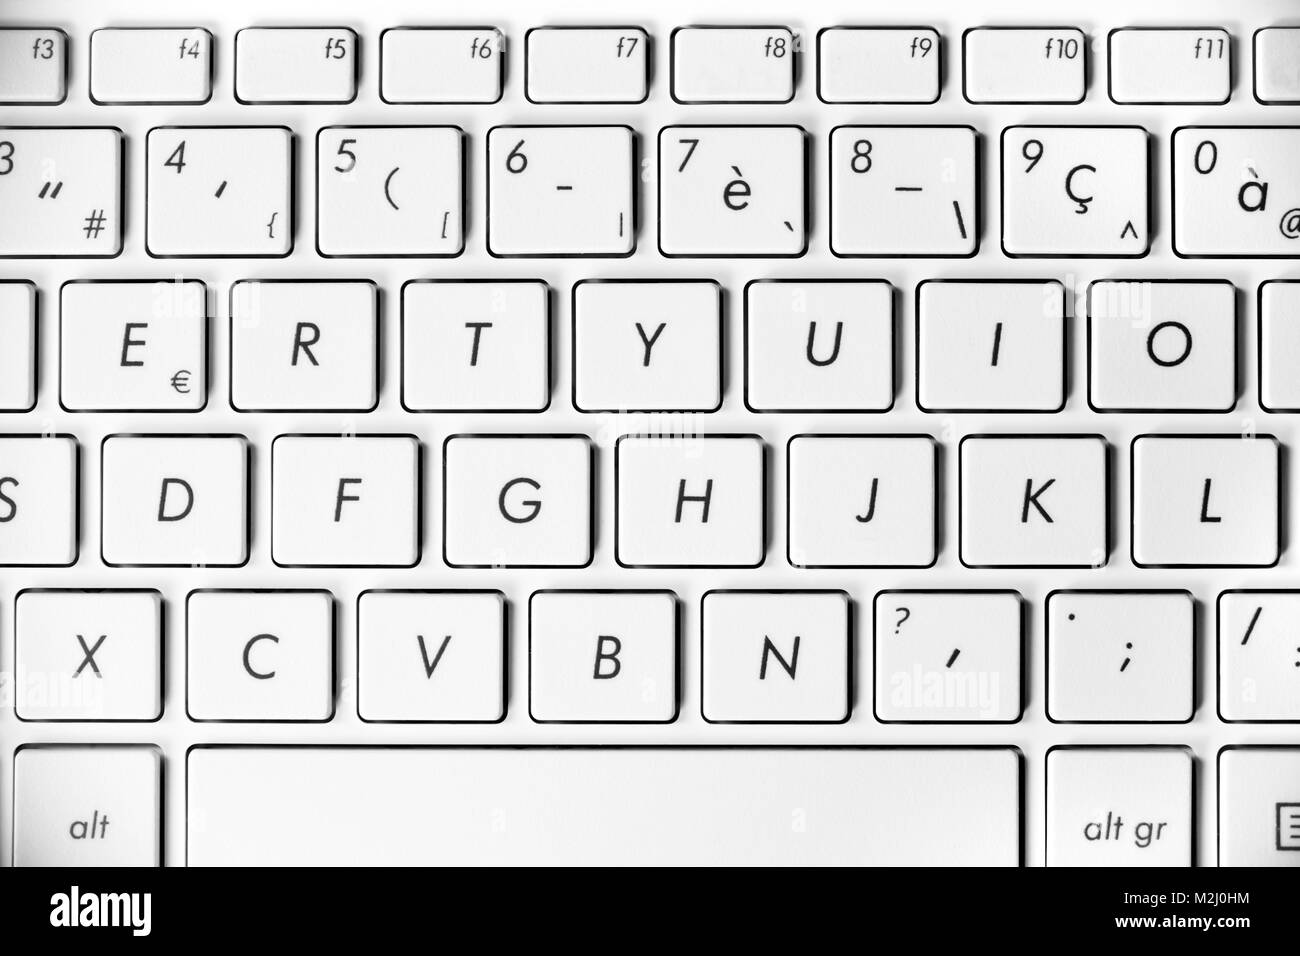 Computer keyboard: Bạn đang cần một bàn phím mới cho máy tính của mình và chưa biết lựa chọn loại nào phù hợp? Xem ngay hình ảnh bàn phím dành cho máy tính với nhiều tính năng nâng cao và thiết kế đẹp mắt, giúp bạn thỏa sức sáng tạo và tối đa hóa hiệu quả công việc.